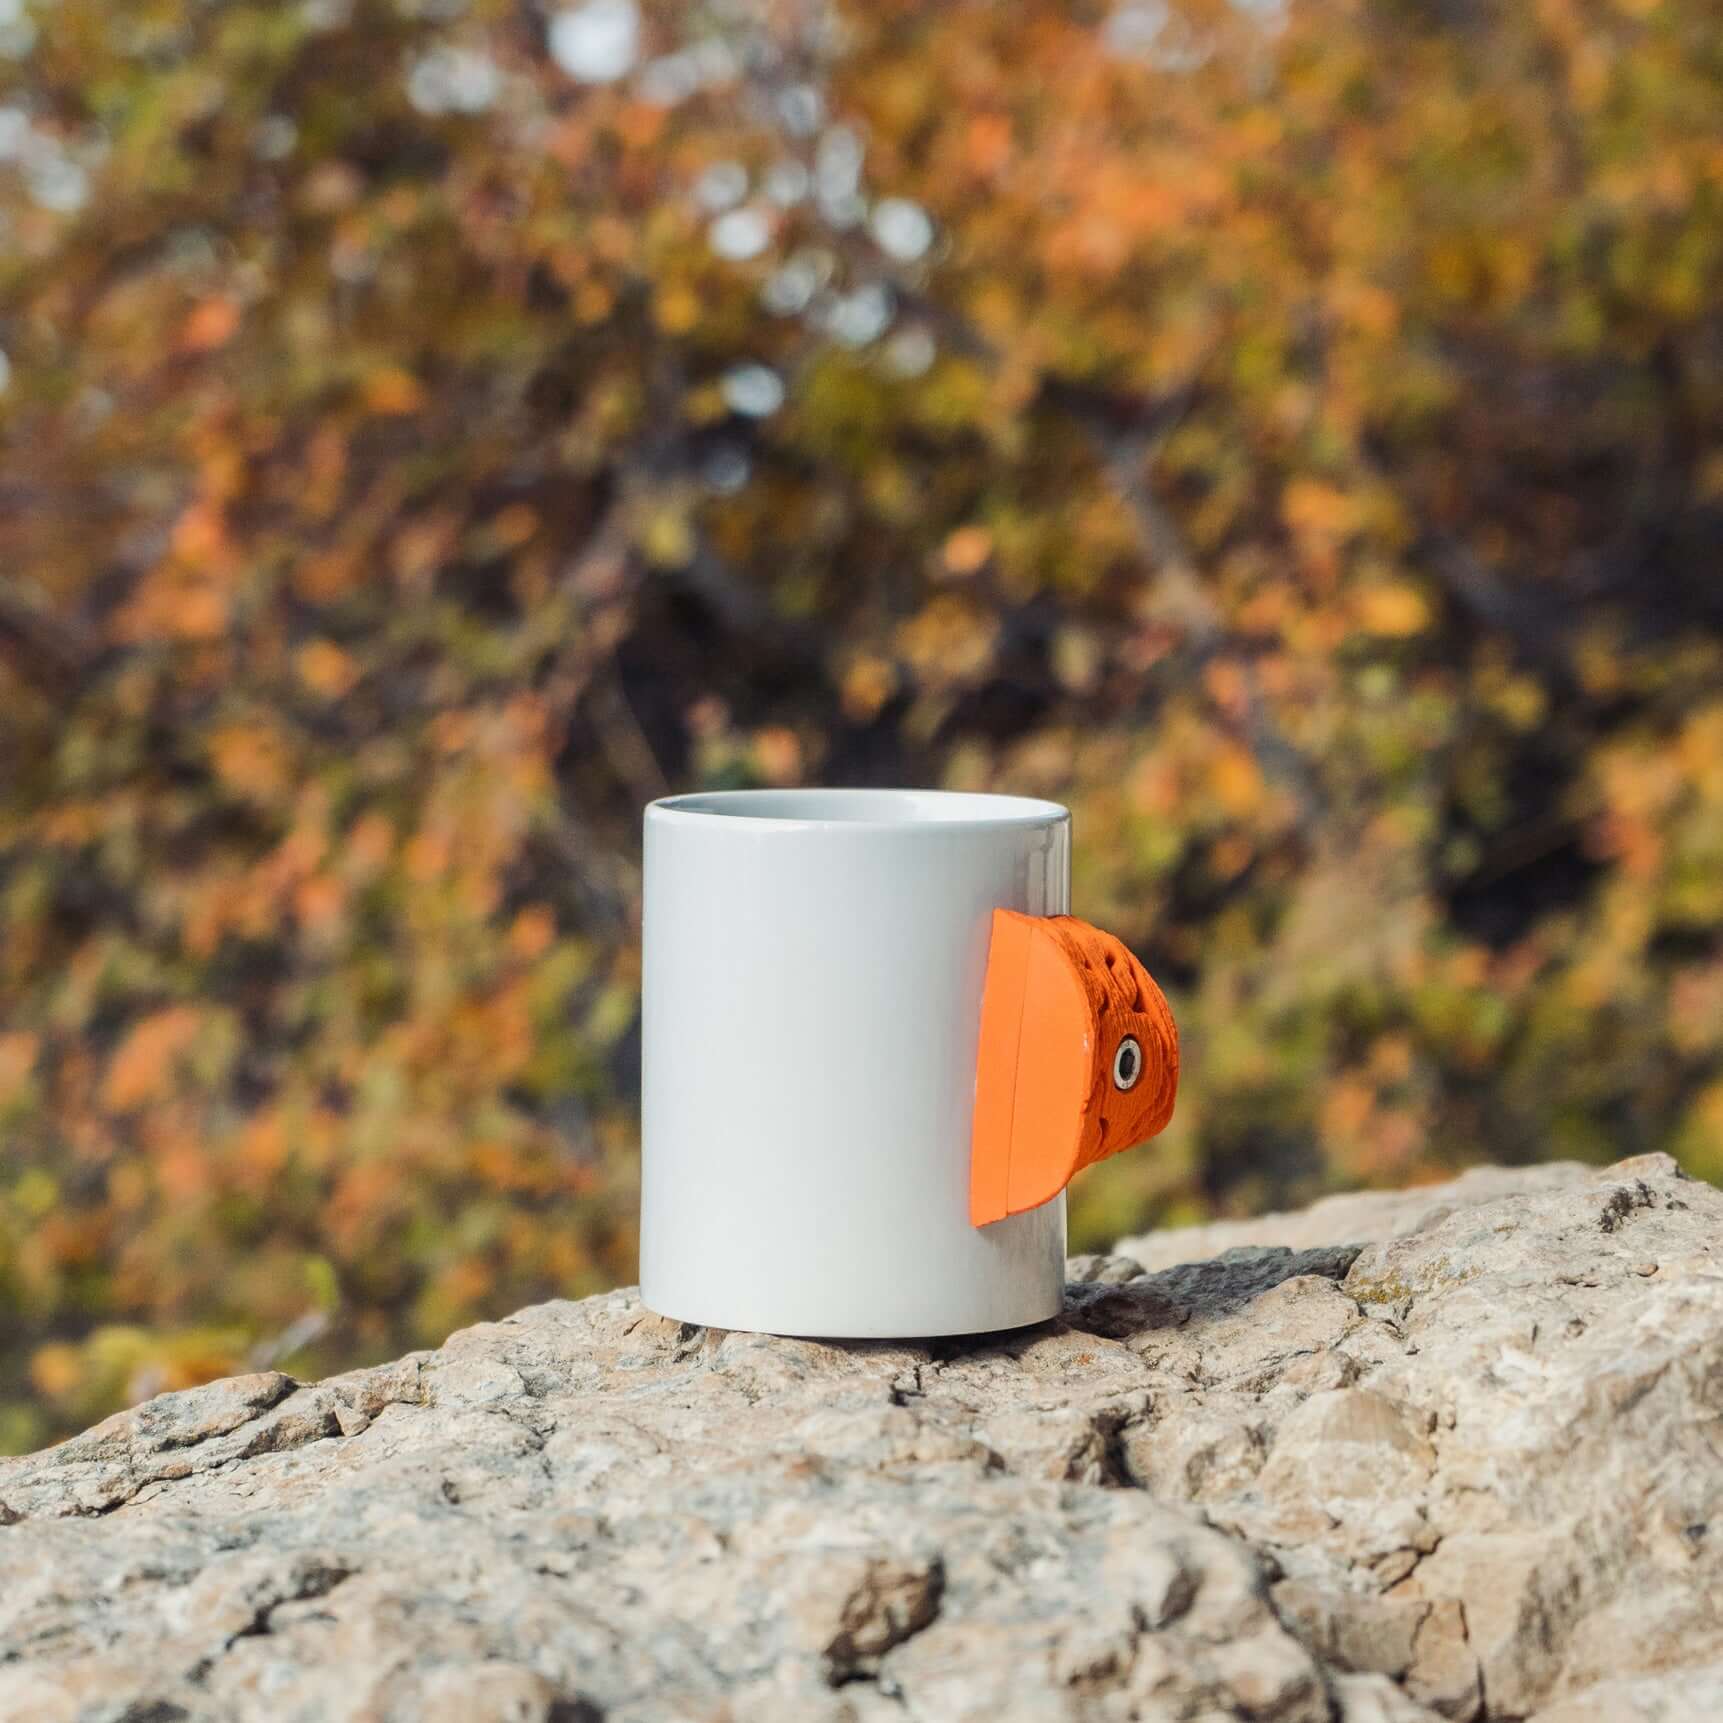 Mug à café for Sale avec l'œuvre « Modèle de prise de rocher d'escalade »  de l'artiste Squibfireworks